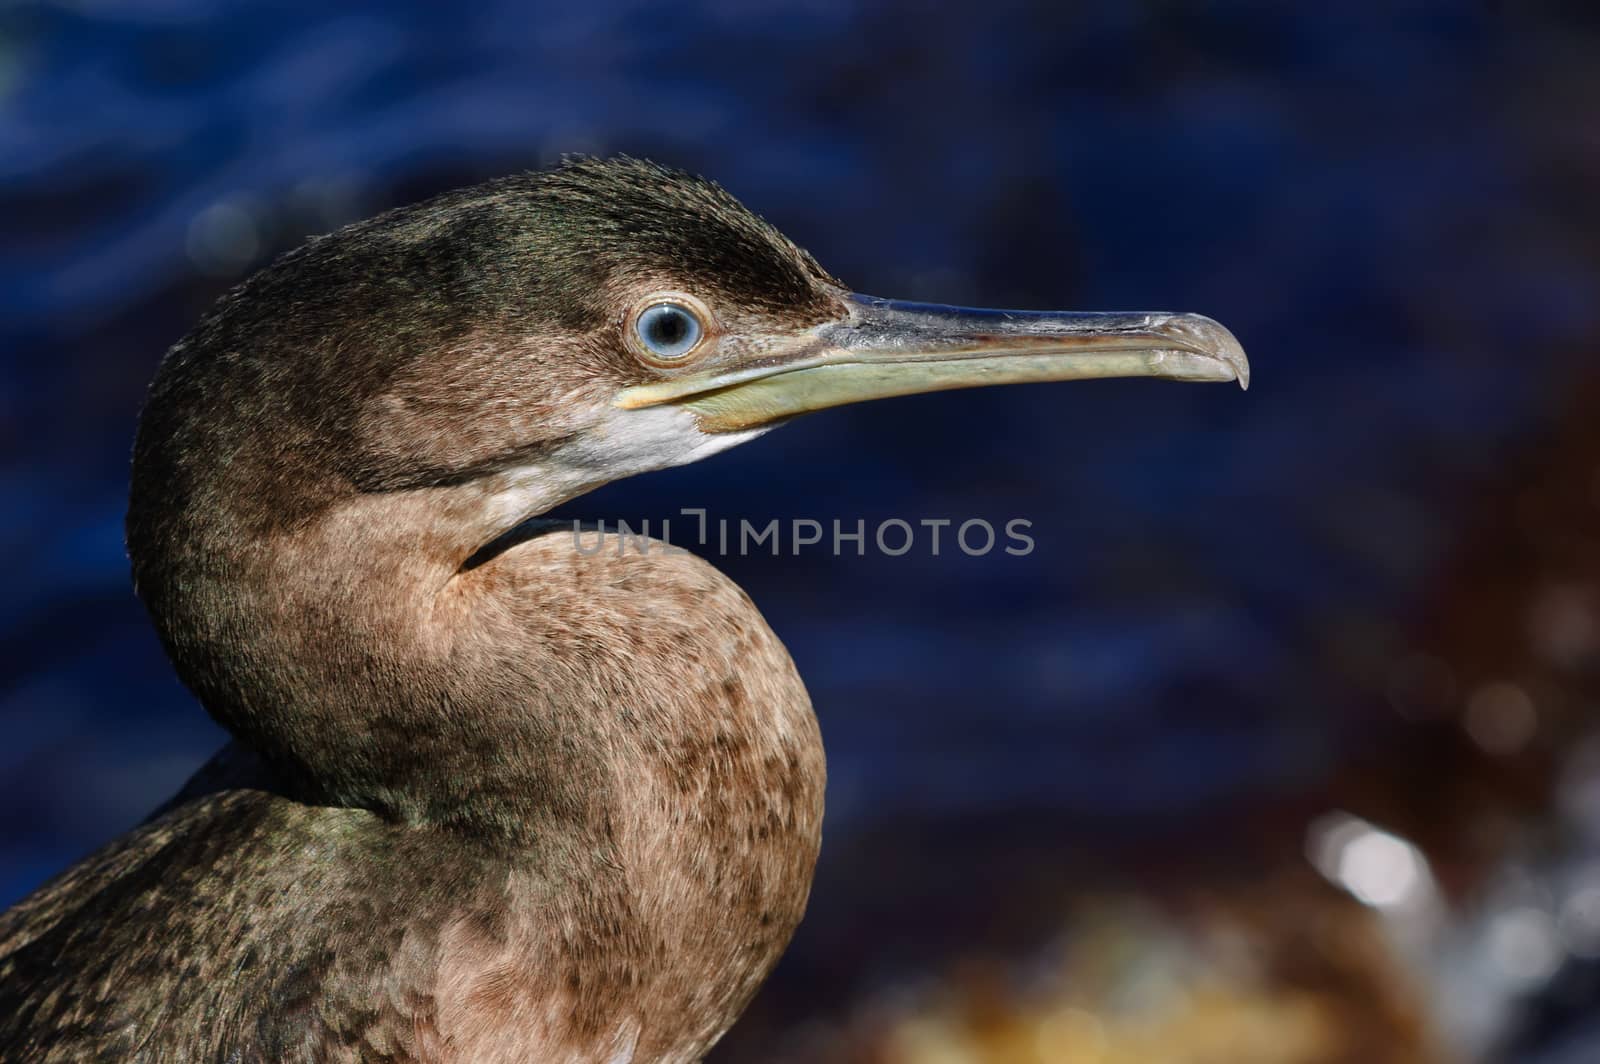 Black sea cormorant by starush